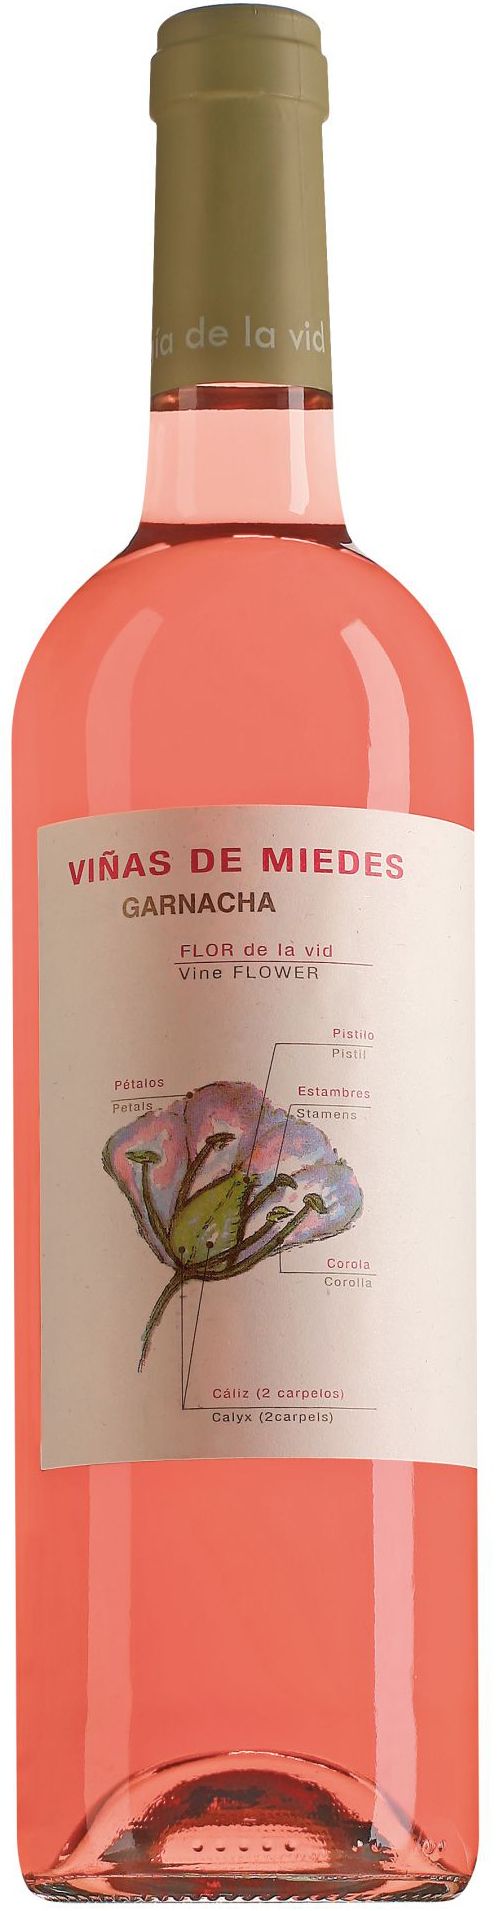 San Alejandro, Vinas De Miedes Garnacha Rosado, 2014